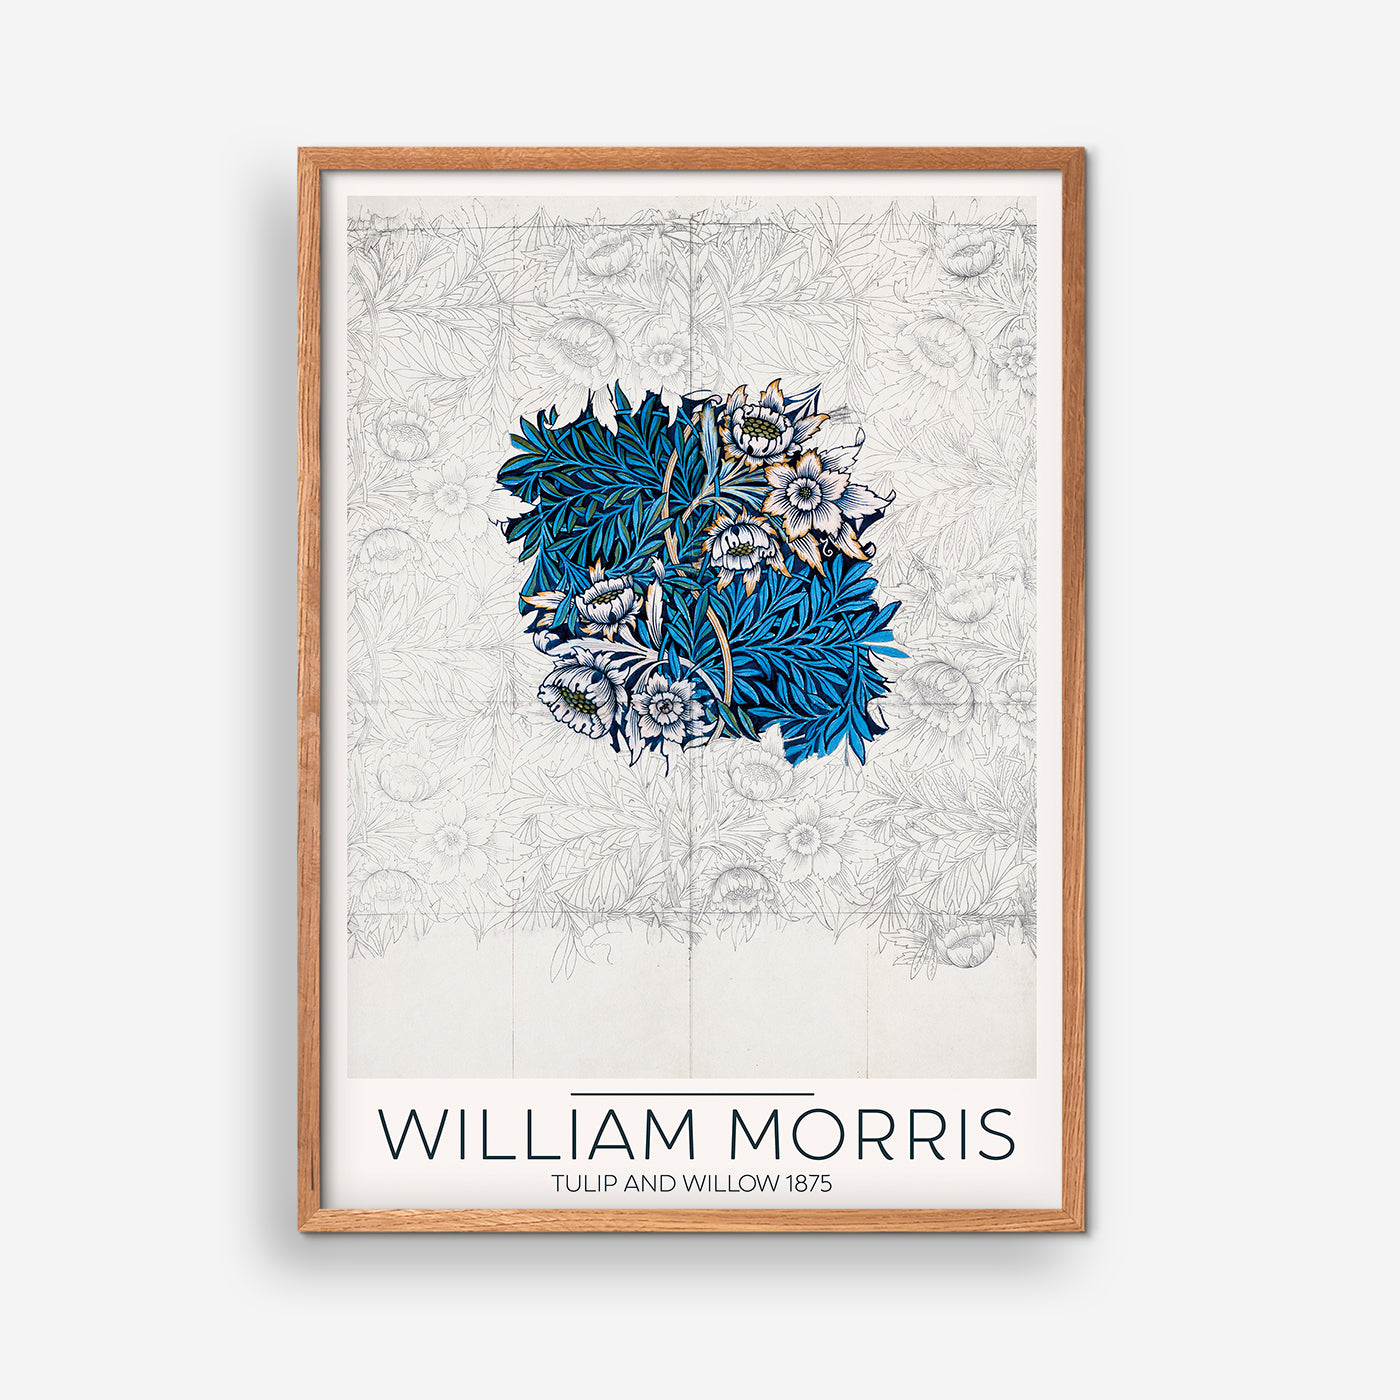 Tulip and Willow 1875 - William Morris